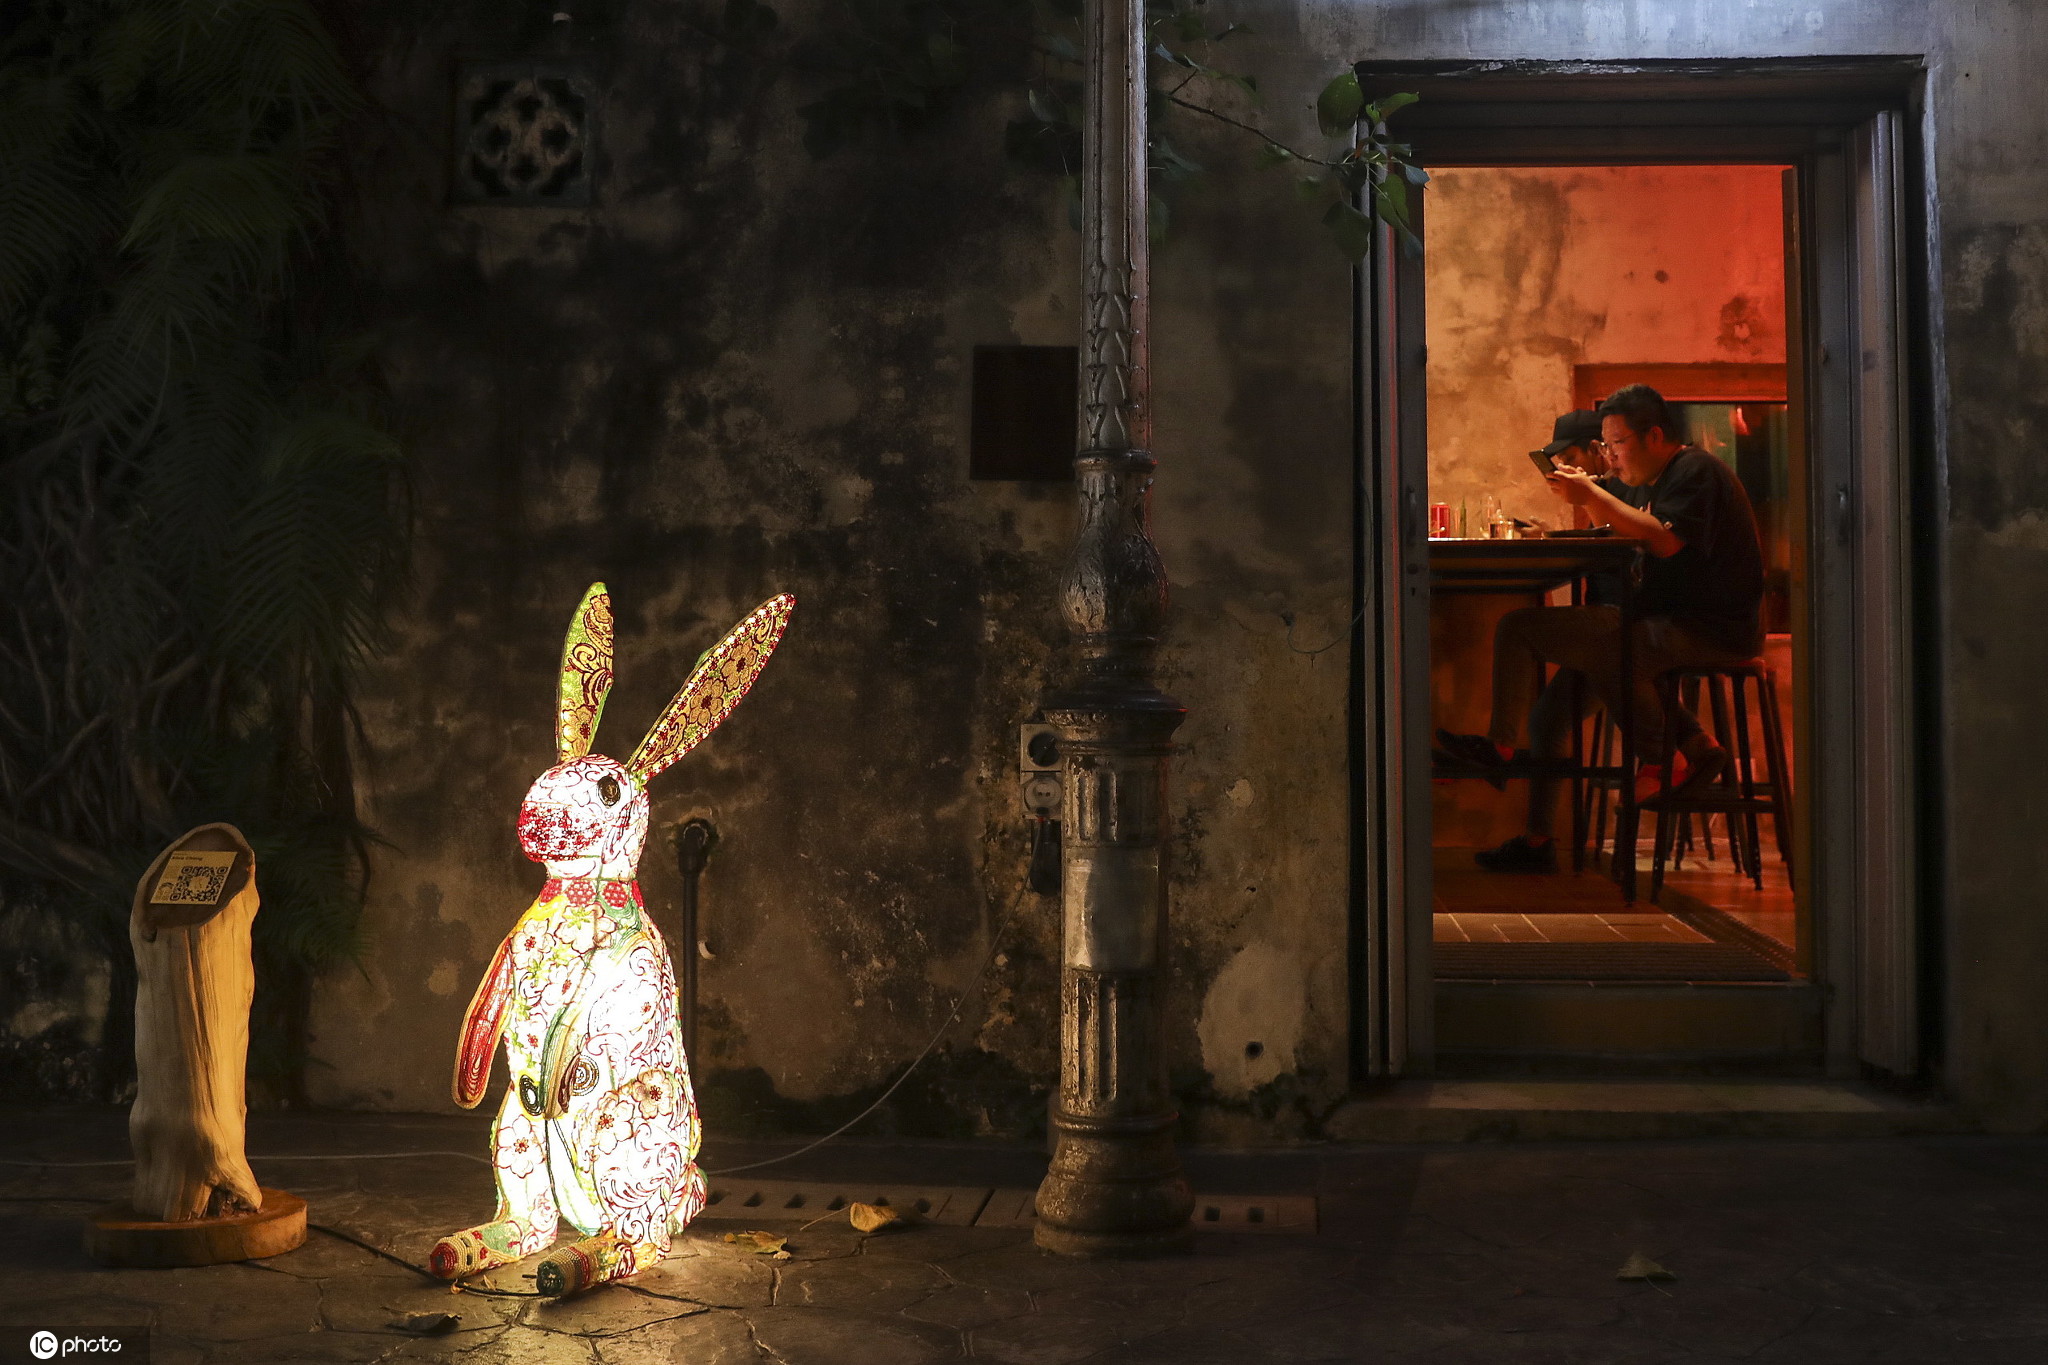 馬來西亞慶祝中秋 街頭巨型兔子燈吸睛-圖4